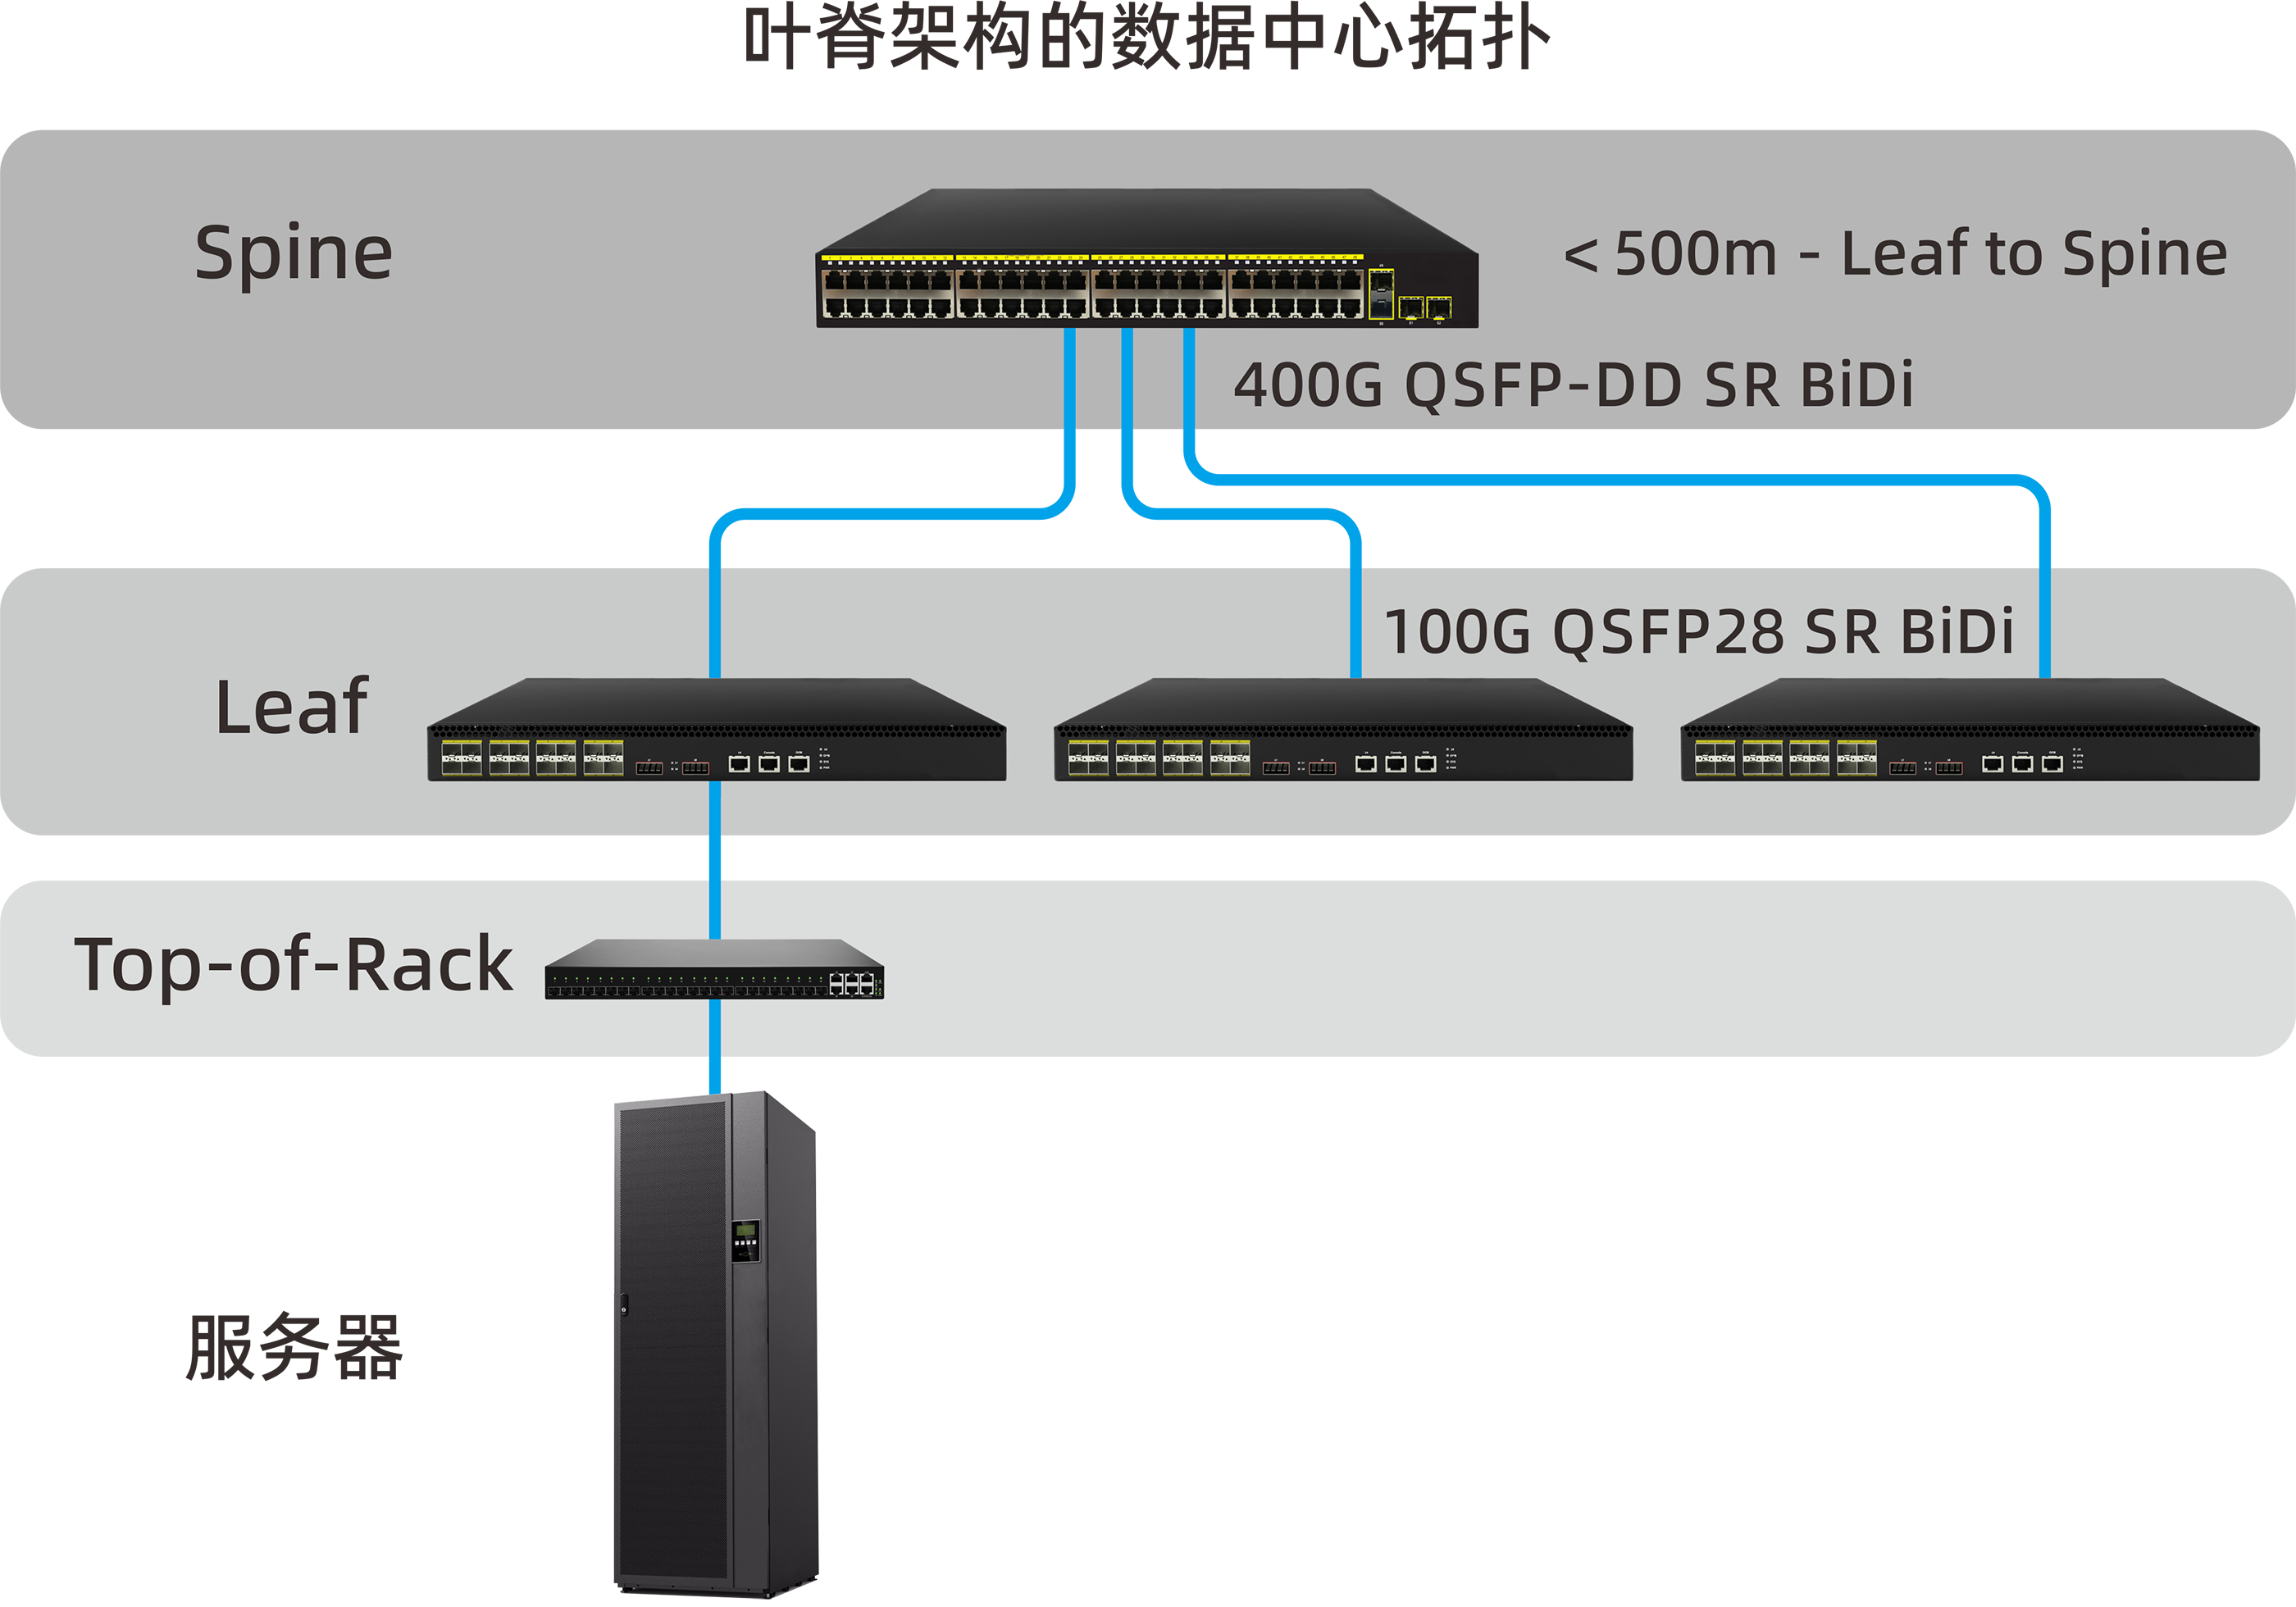 使用100G QSFP28 SR BiDi光模块的叶脊连接